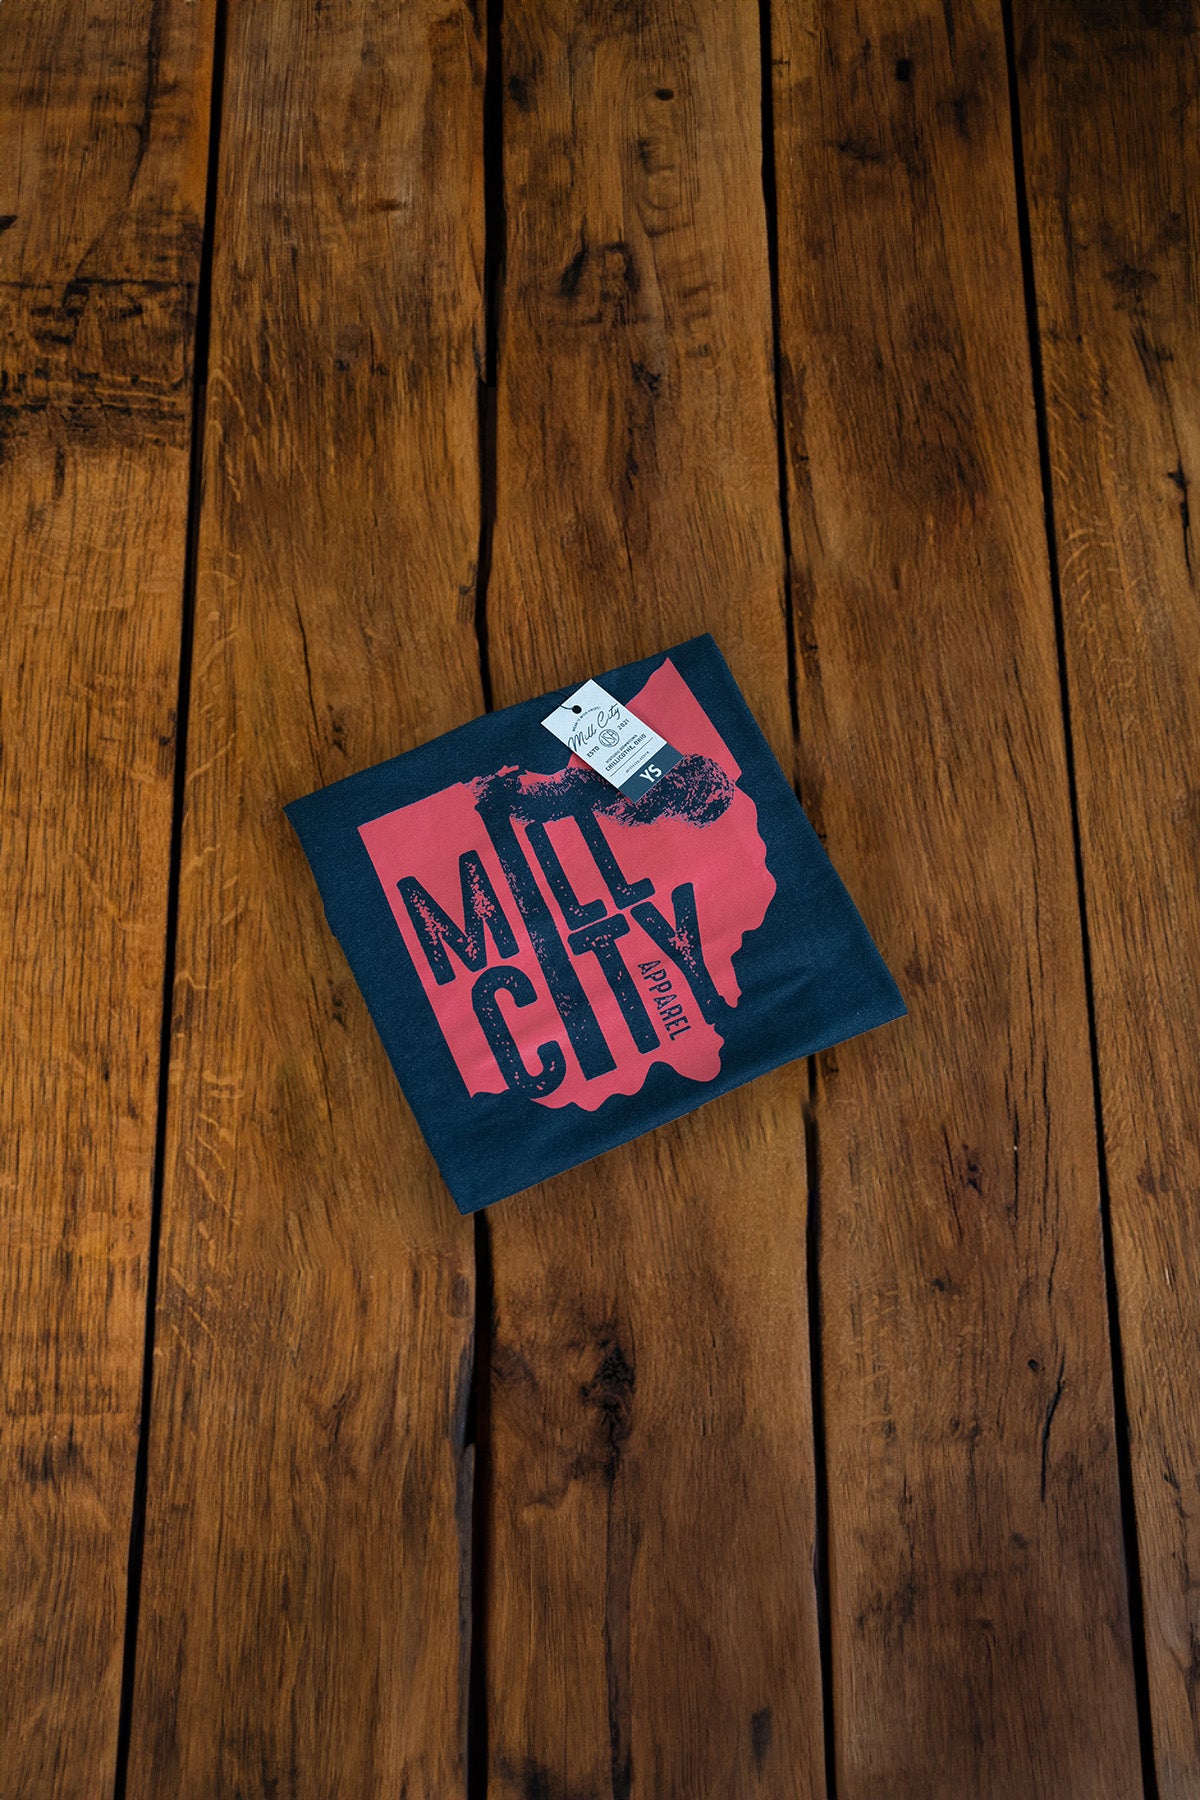 Mill City Ohio - Youth